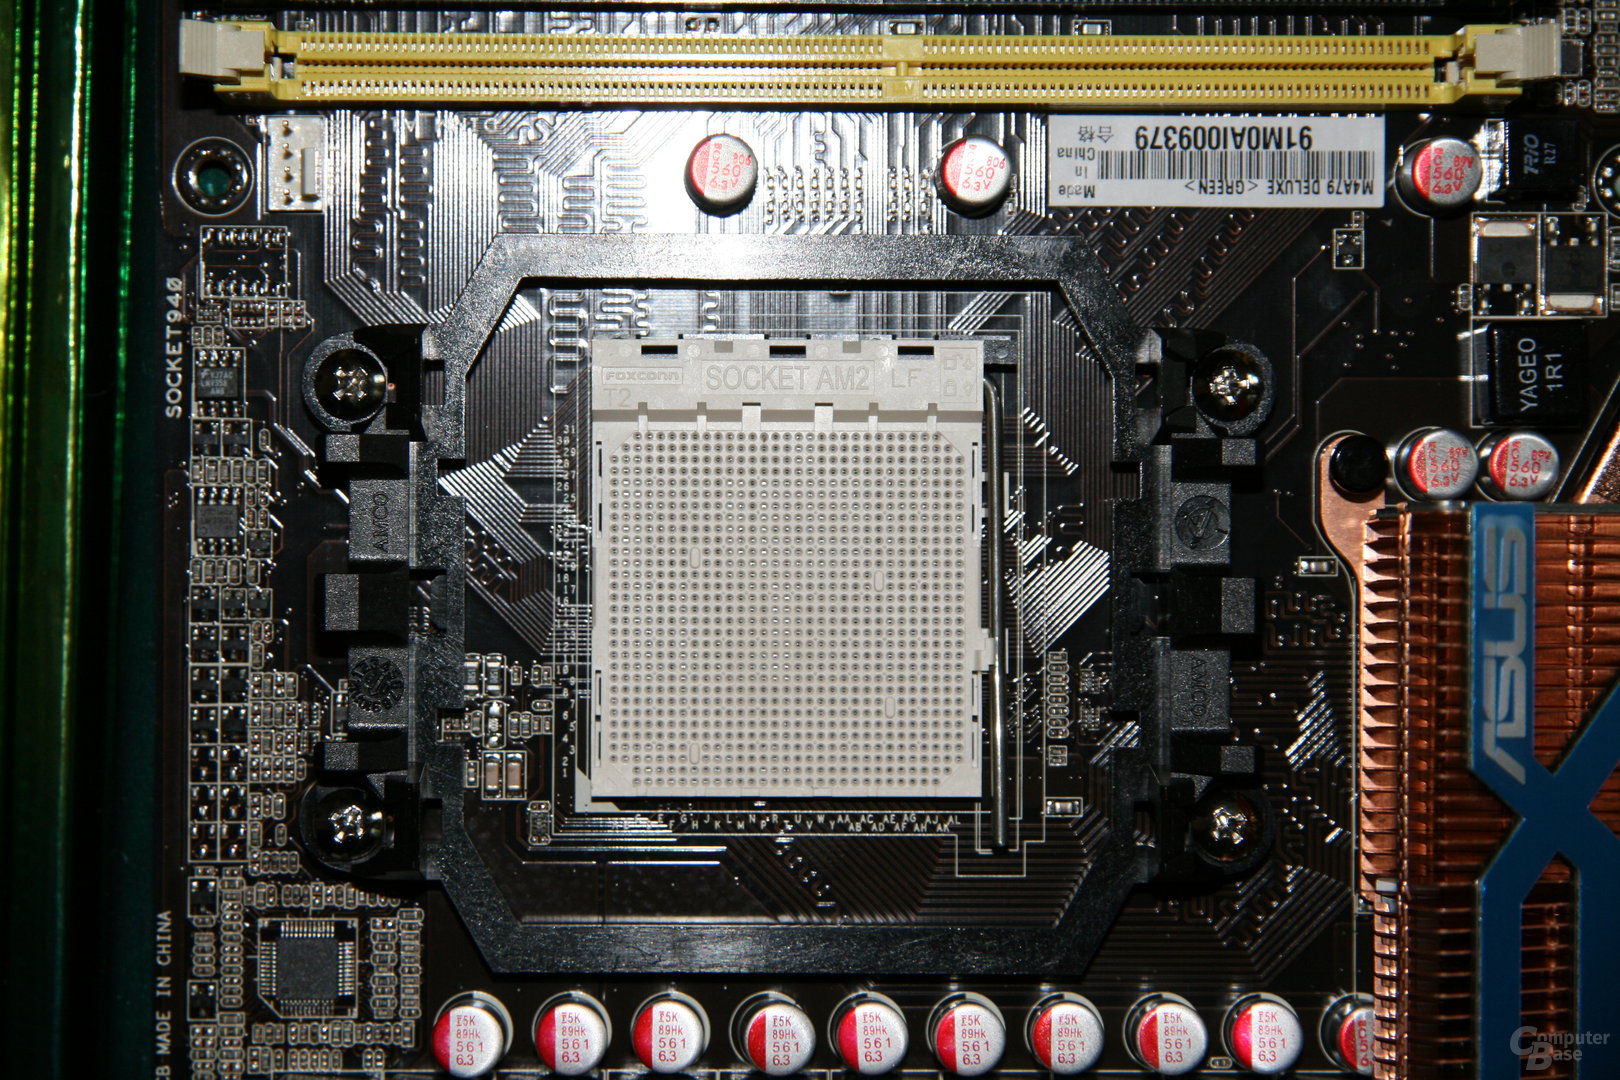 Sockel AM2 für AMD-CPUs